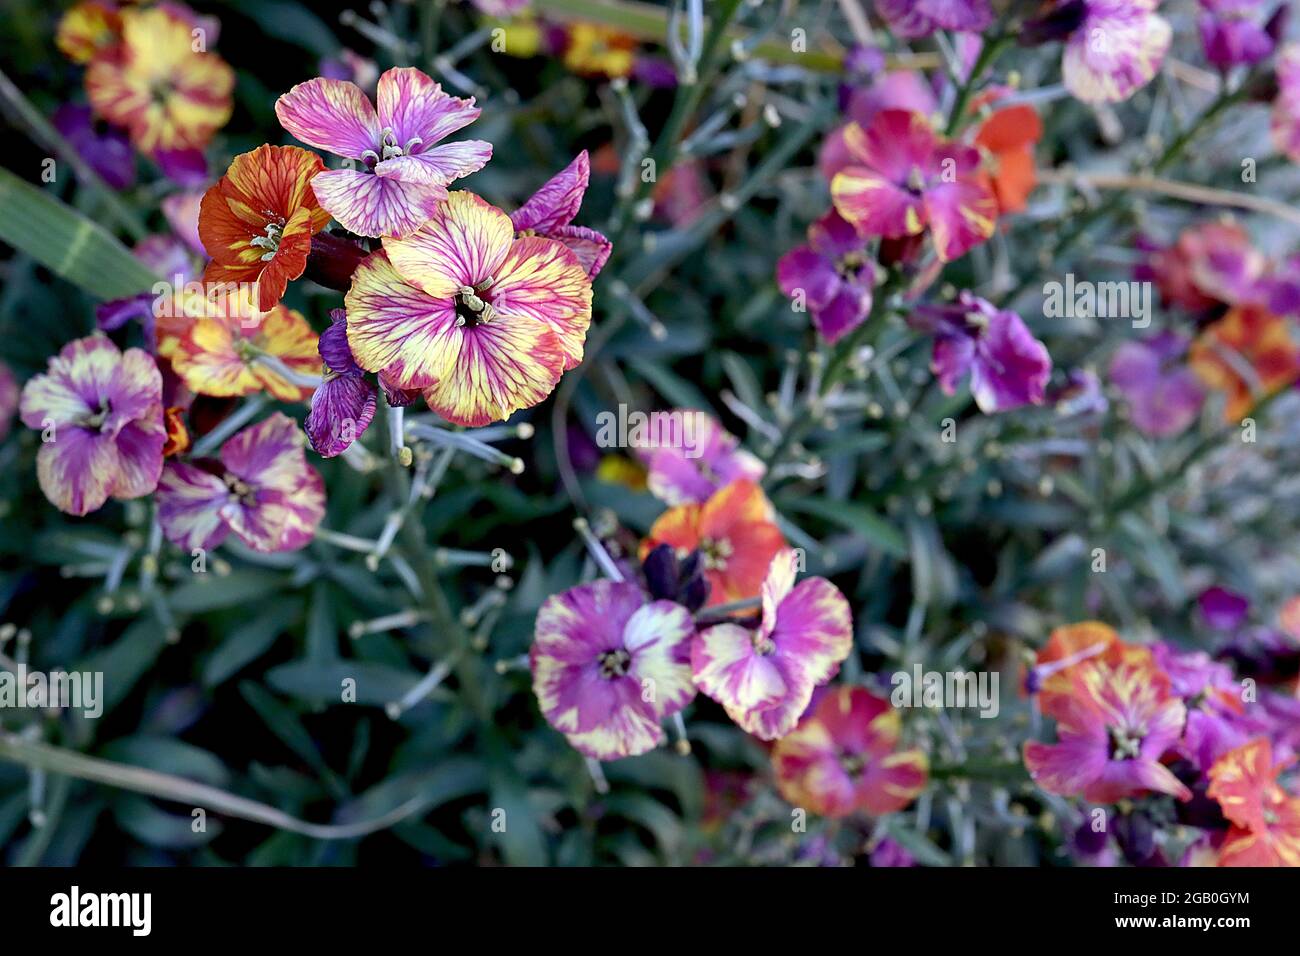 Erysimum cheiri / Wallflower ‘moment de Monet’ et ‘constant hourras’ fleurs marbrées de stries pourpres, blanches, rouges et jaunes, juin, Angleterre, Royaume-Uni Banque D'Images